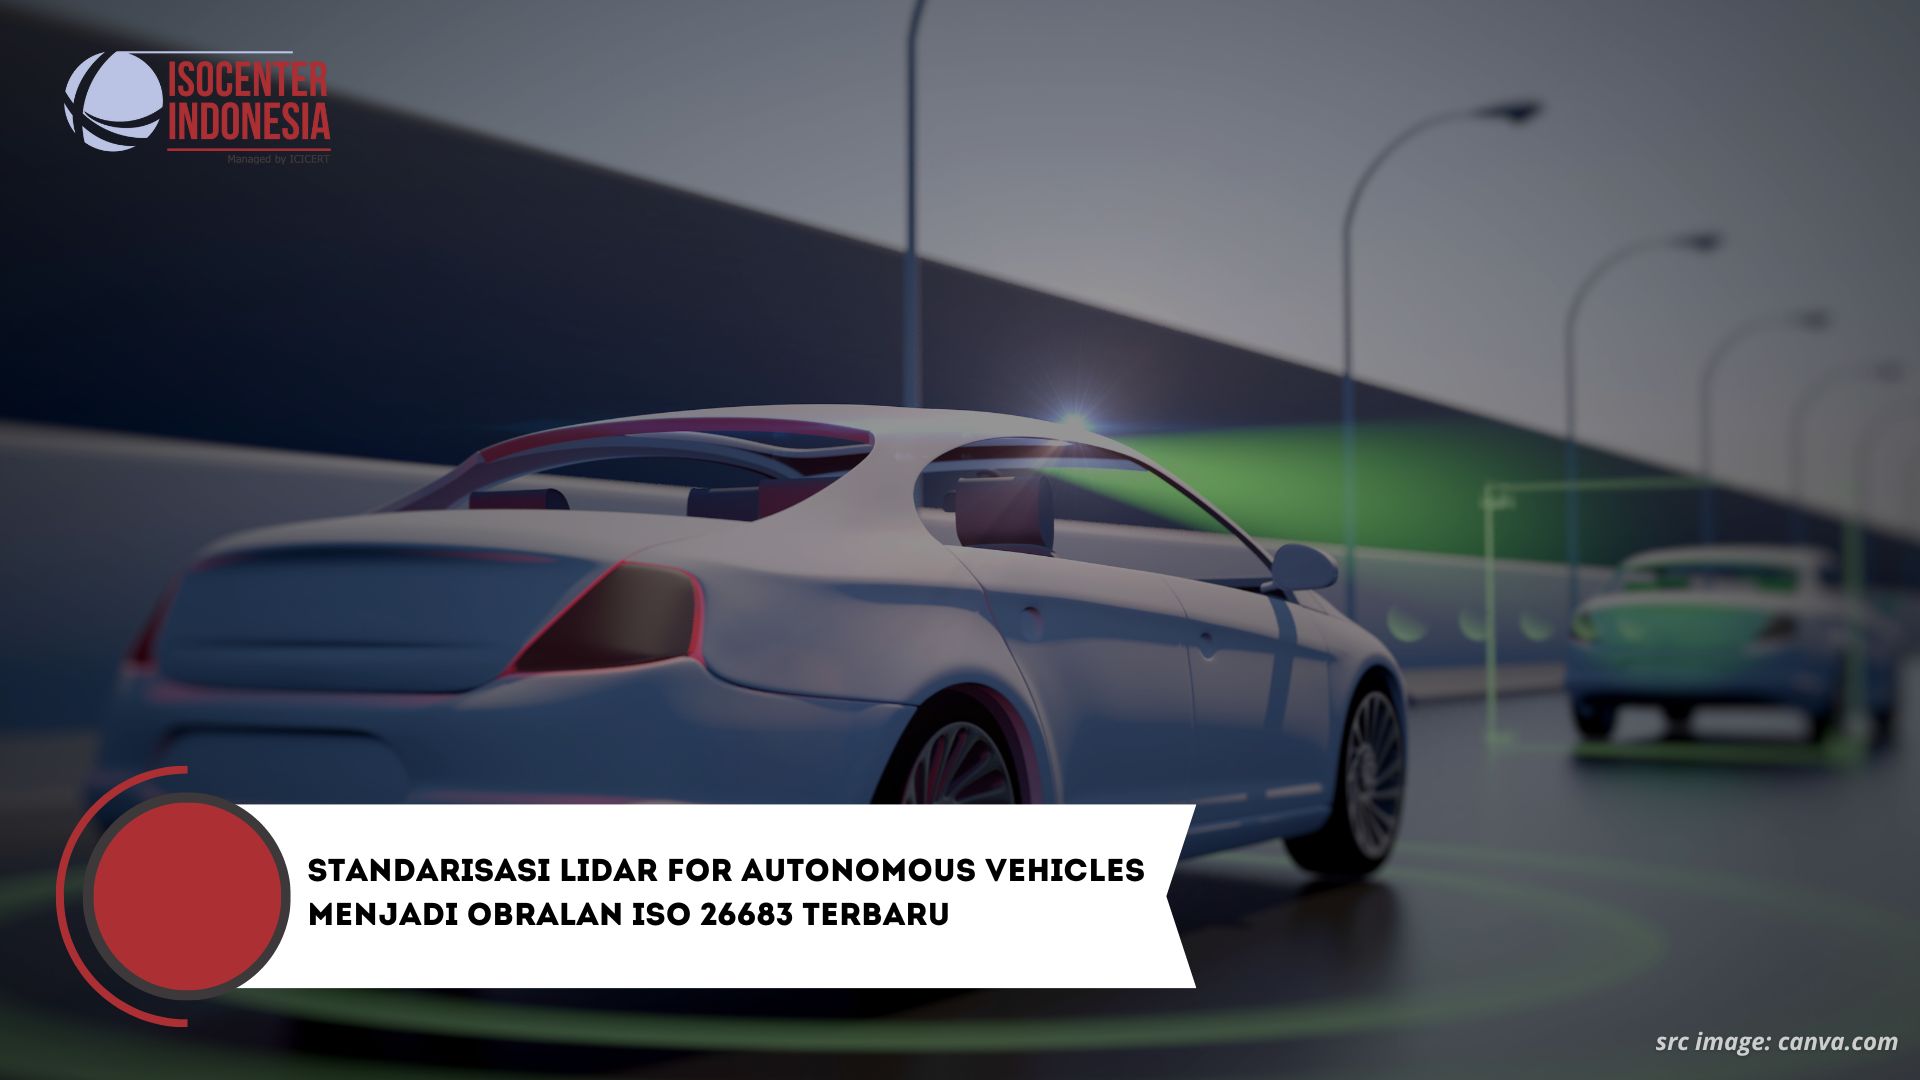 Standarisasi LIDAR for Autonomous Vehicles Menjadi Obralan ISO 26683 Terbaru